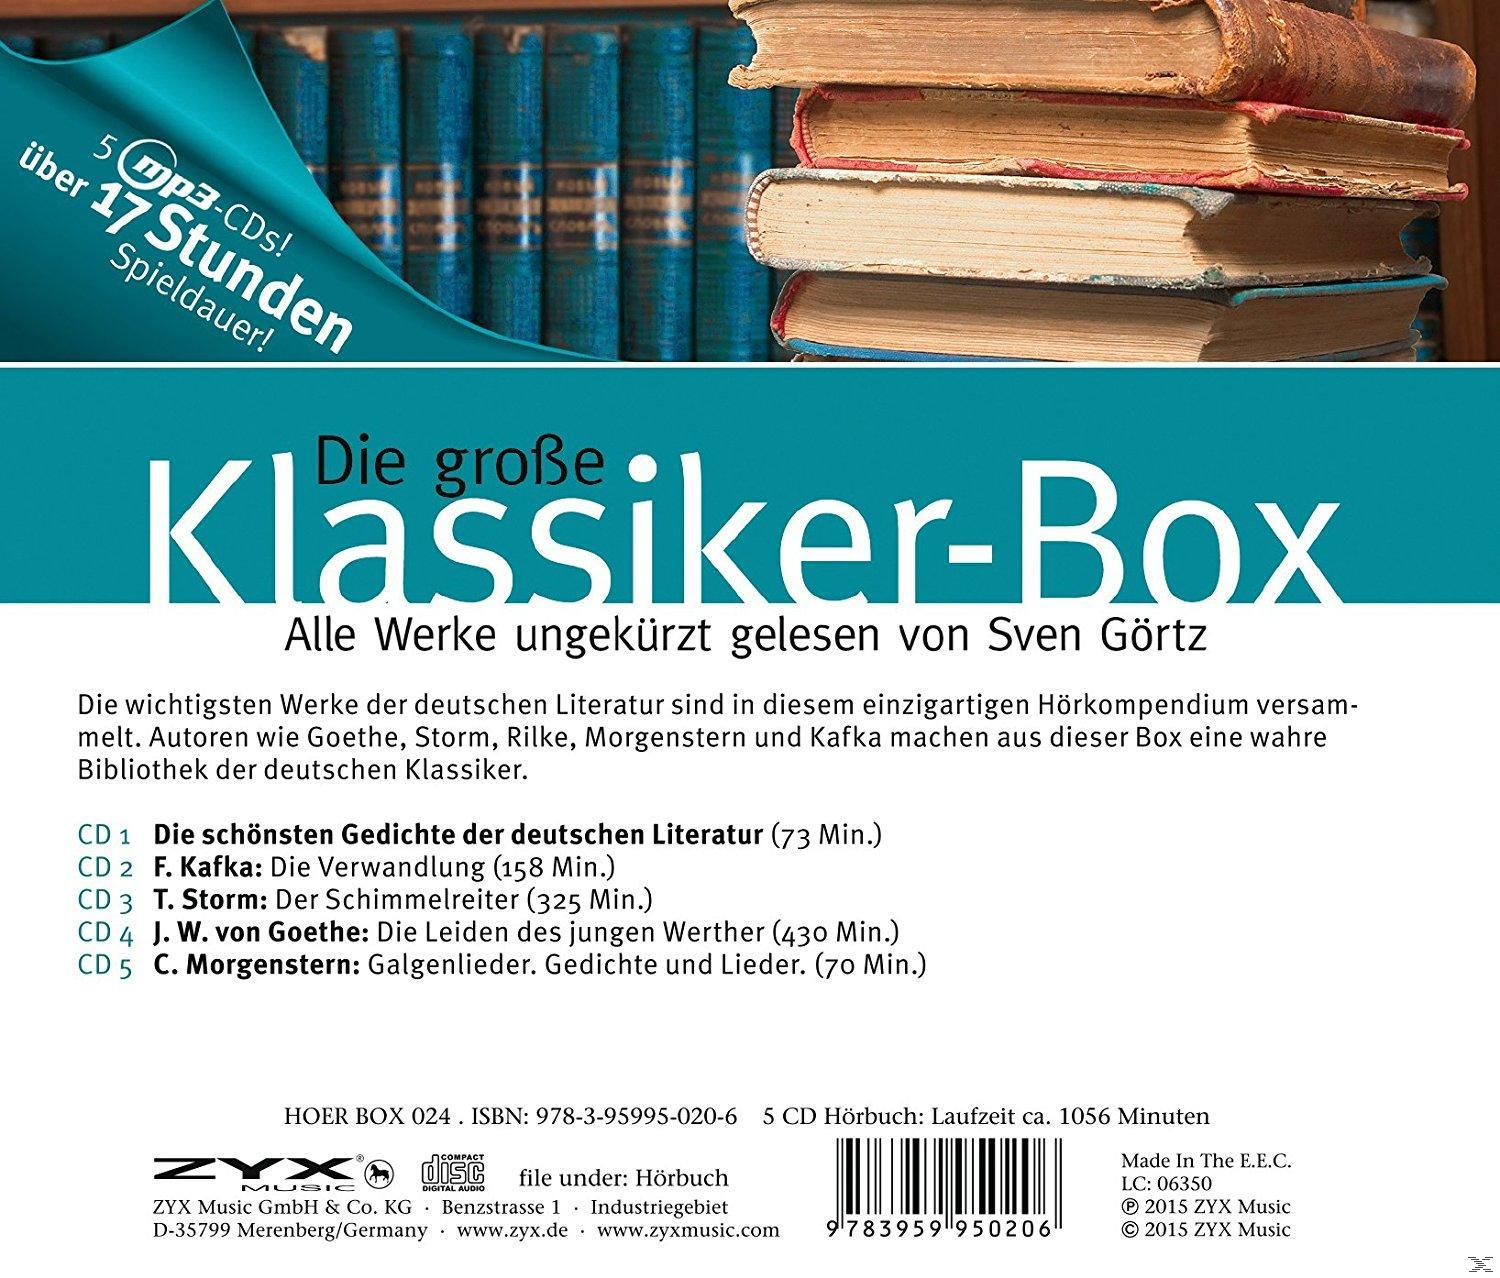 Görtz (MP3-CD) - Sven 5 Auf - Mp3-Cds Die Klassiker-Box Große